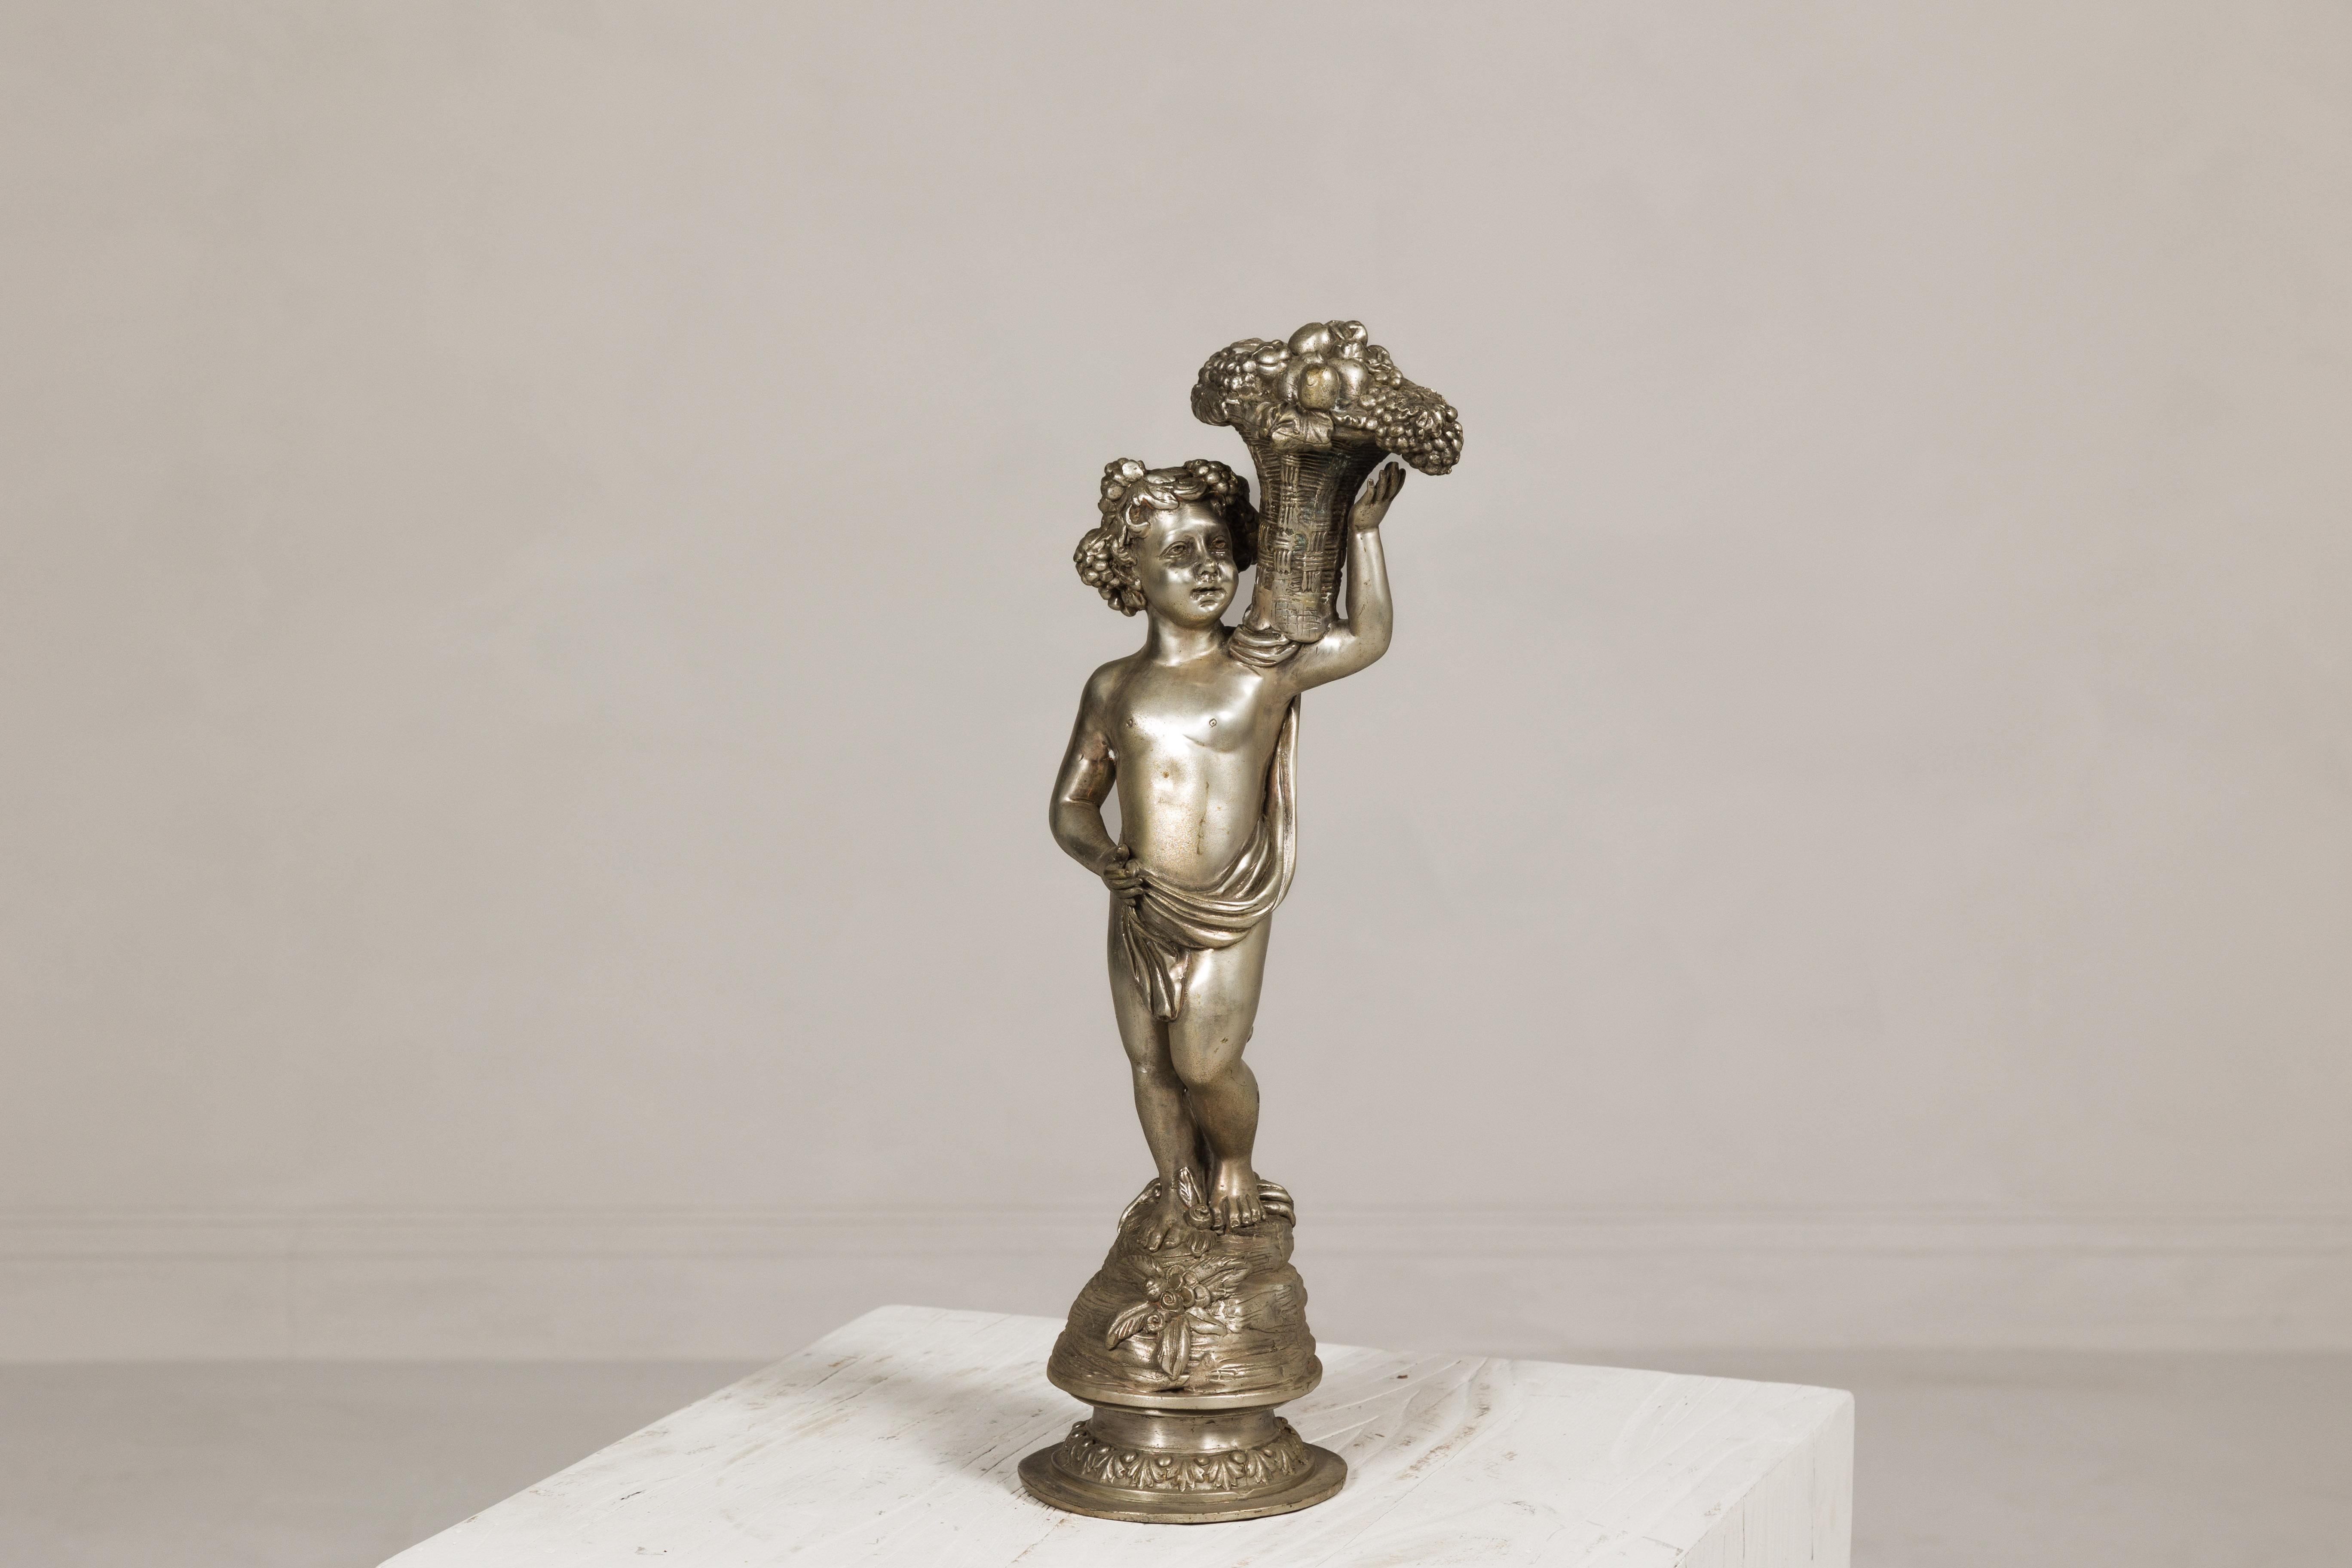 Barocke Bronzestatuette eines Putto, der einen Weidenkorb trägt, mit silberner Patina. Inspiriert von der Dramatik und Opulenz des Barocks, ist diese Vintage-Bronzestatuette eine exquisite Hommage an die klassische Kunst. Ein Putto, vielleicht ein